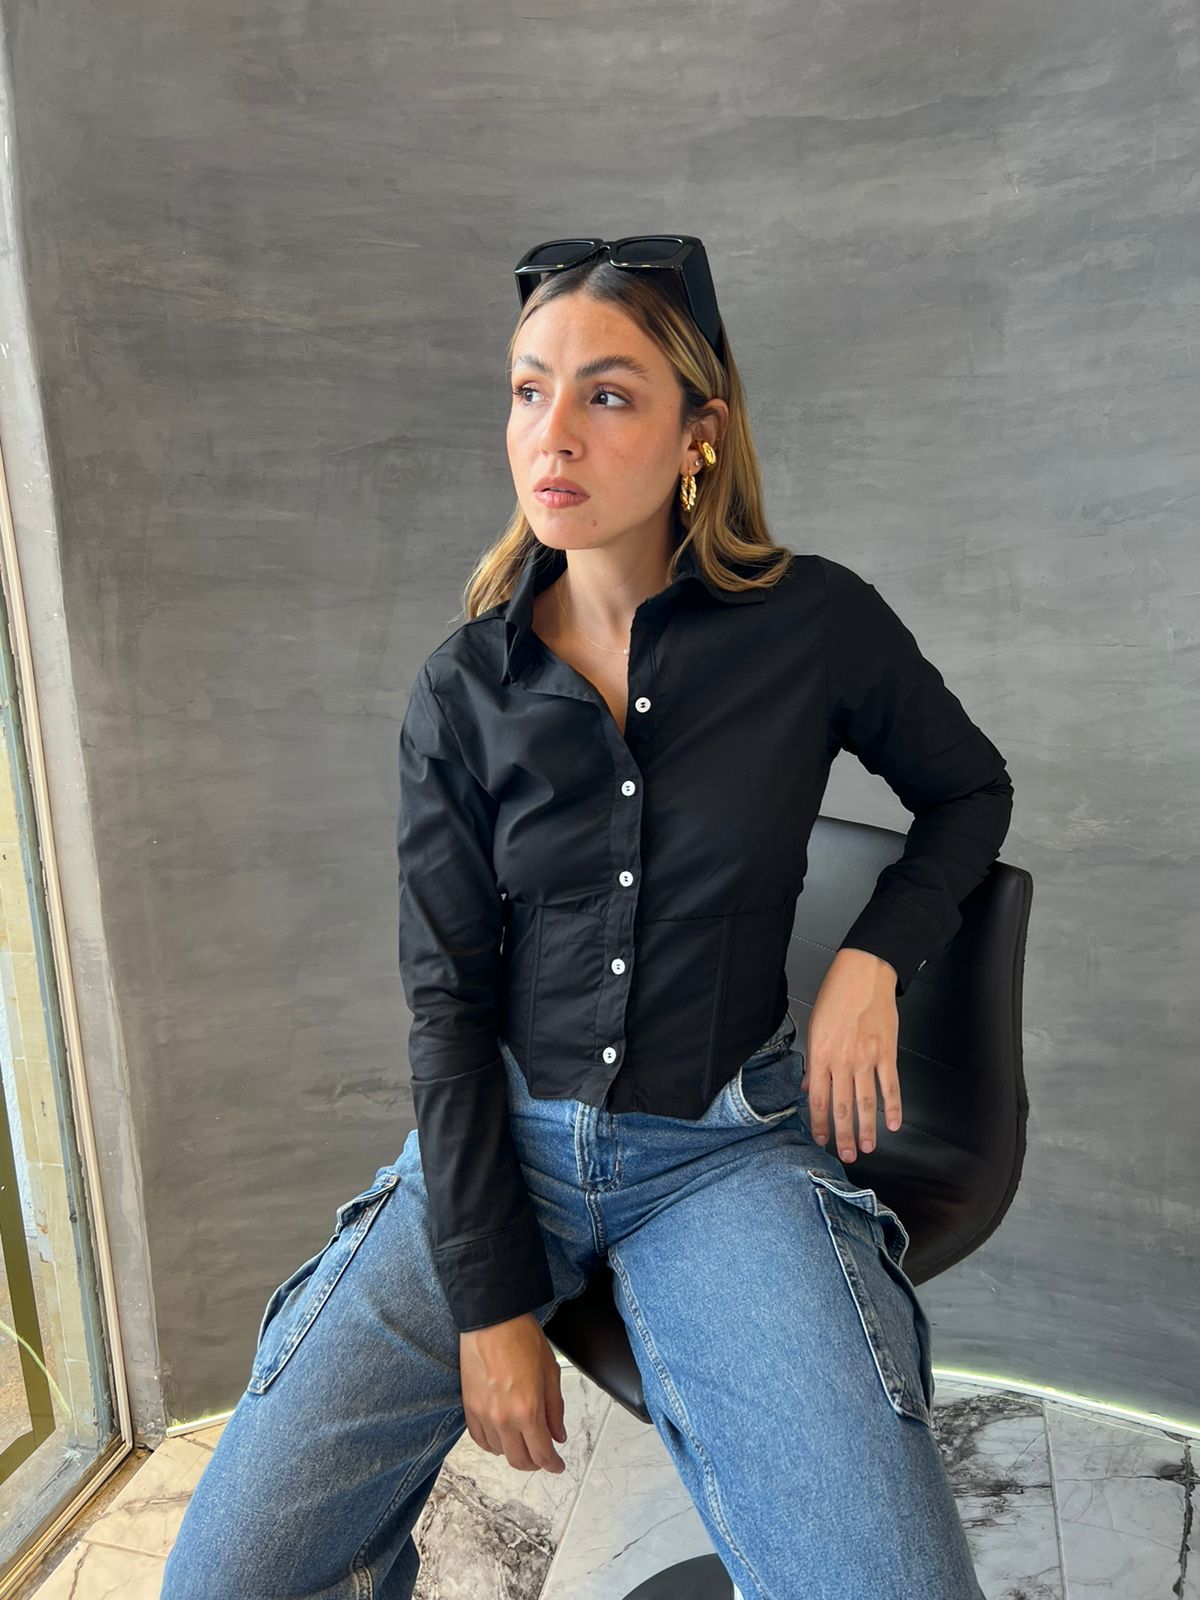 Mujer vistiendo una blusa crop top negra con botones blancos, ideal para un look elegante y moderno. Disponible en KIKE RODRIGUEZ.